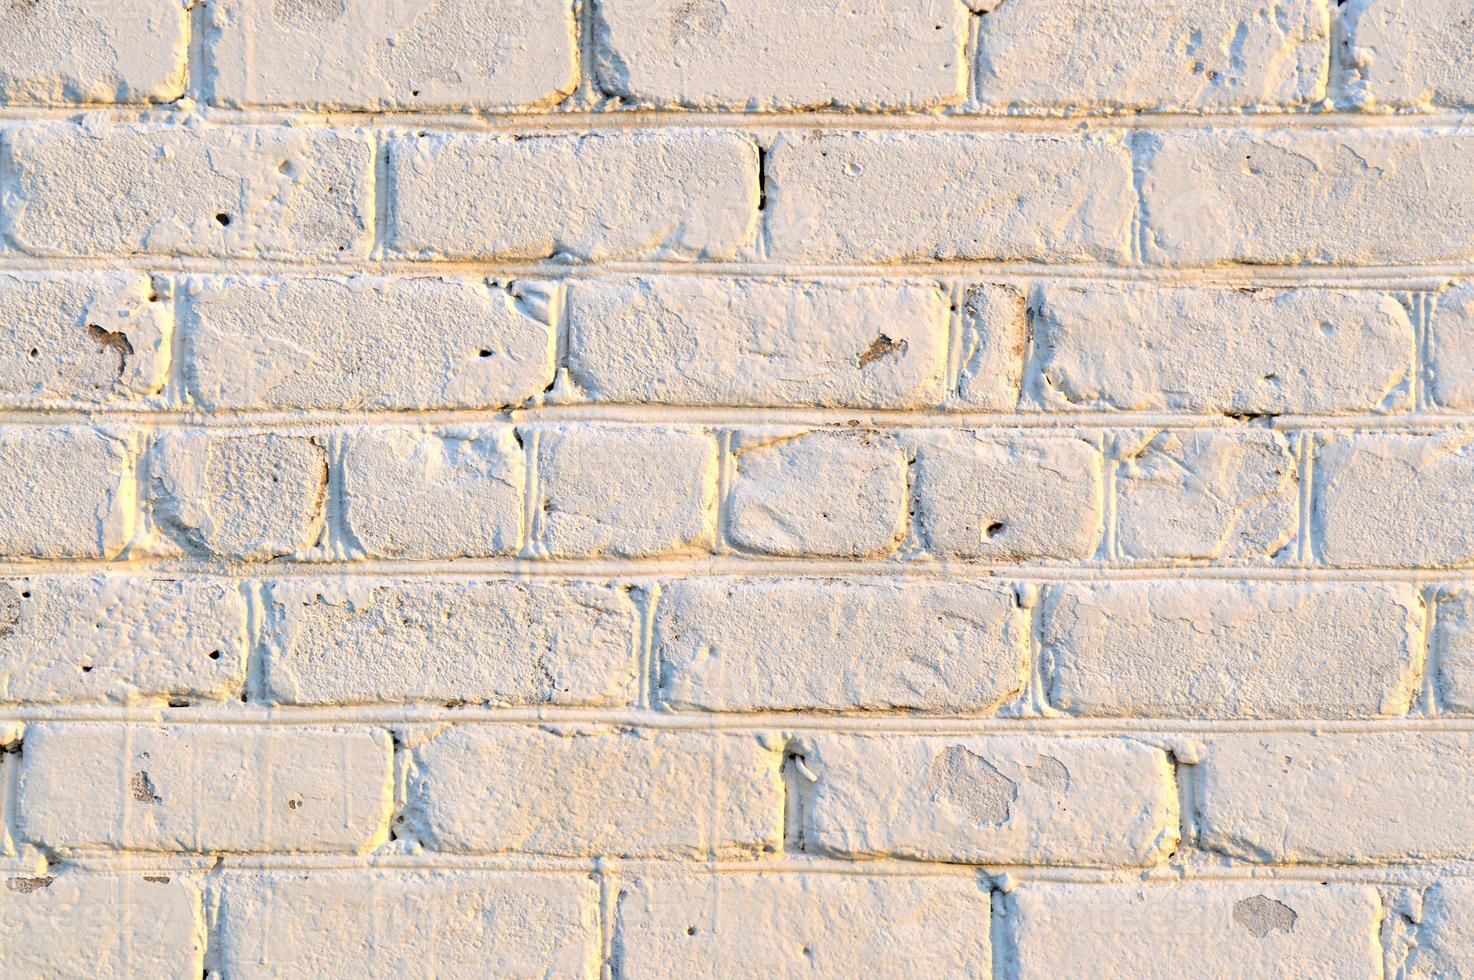 viejo muro de ladrillo blanco. fondo de textura de piedra antigua. fondo urbano, pared de ladrillo industrial en ruinas blancas con espacio de copia. telón de fondo de diseño de hogar y oficina. efecto de la vendimia foto